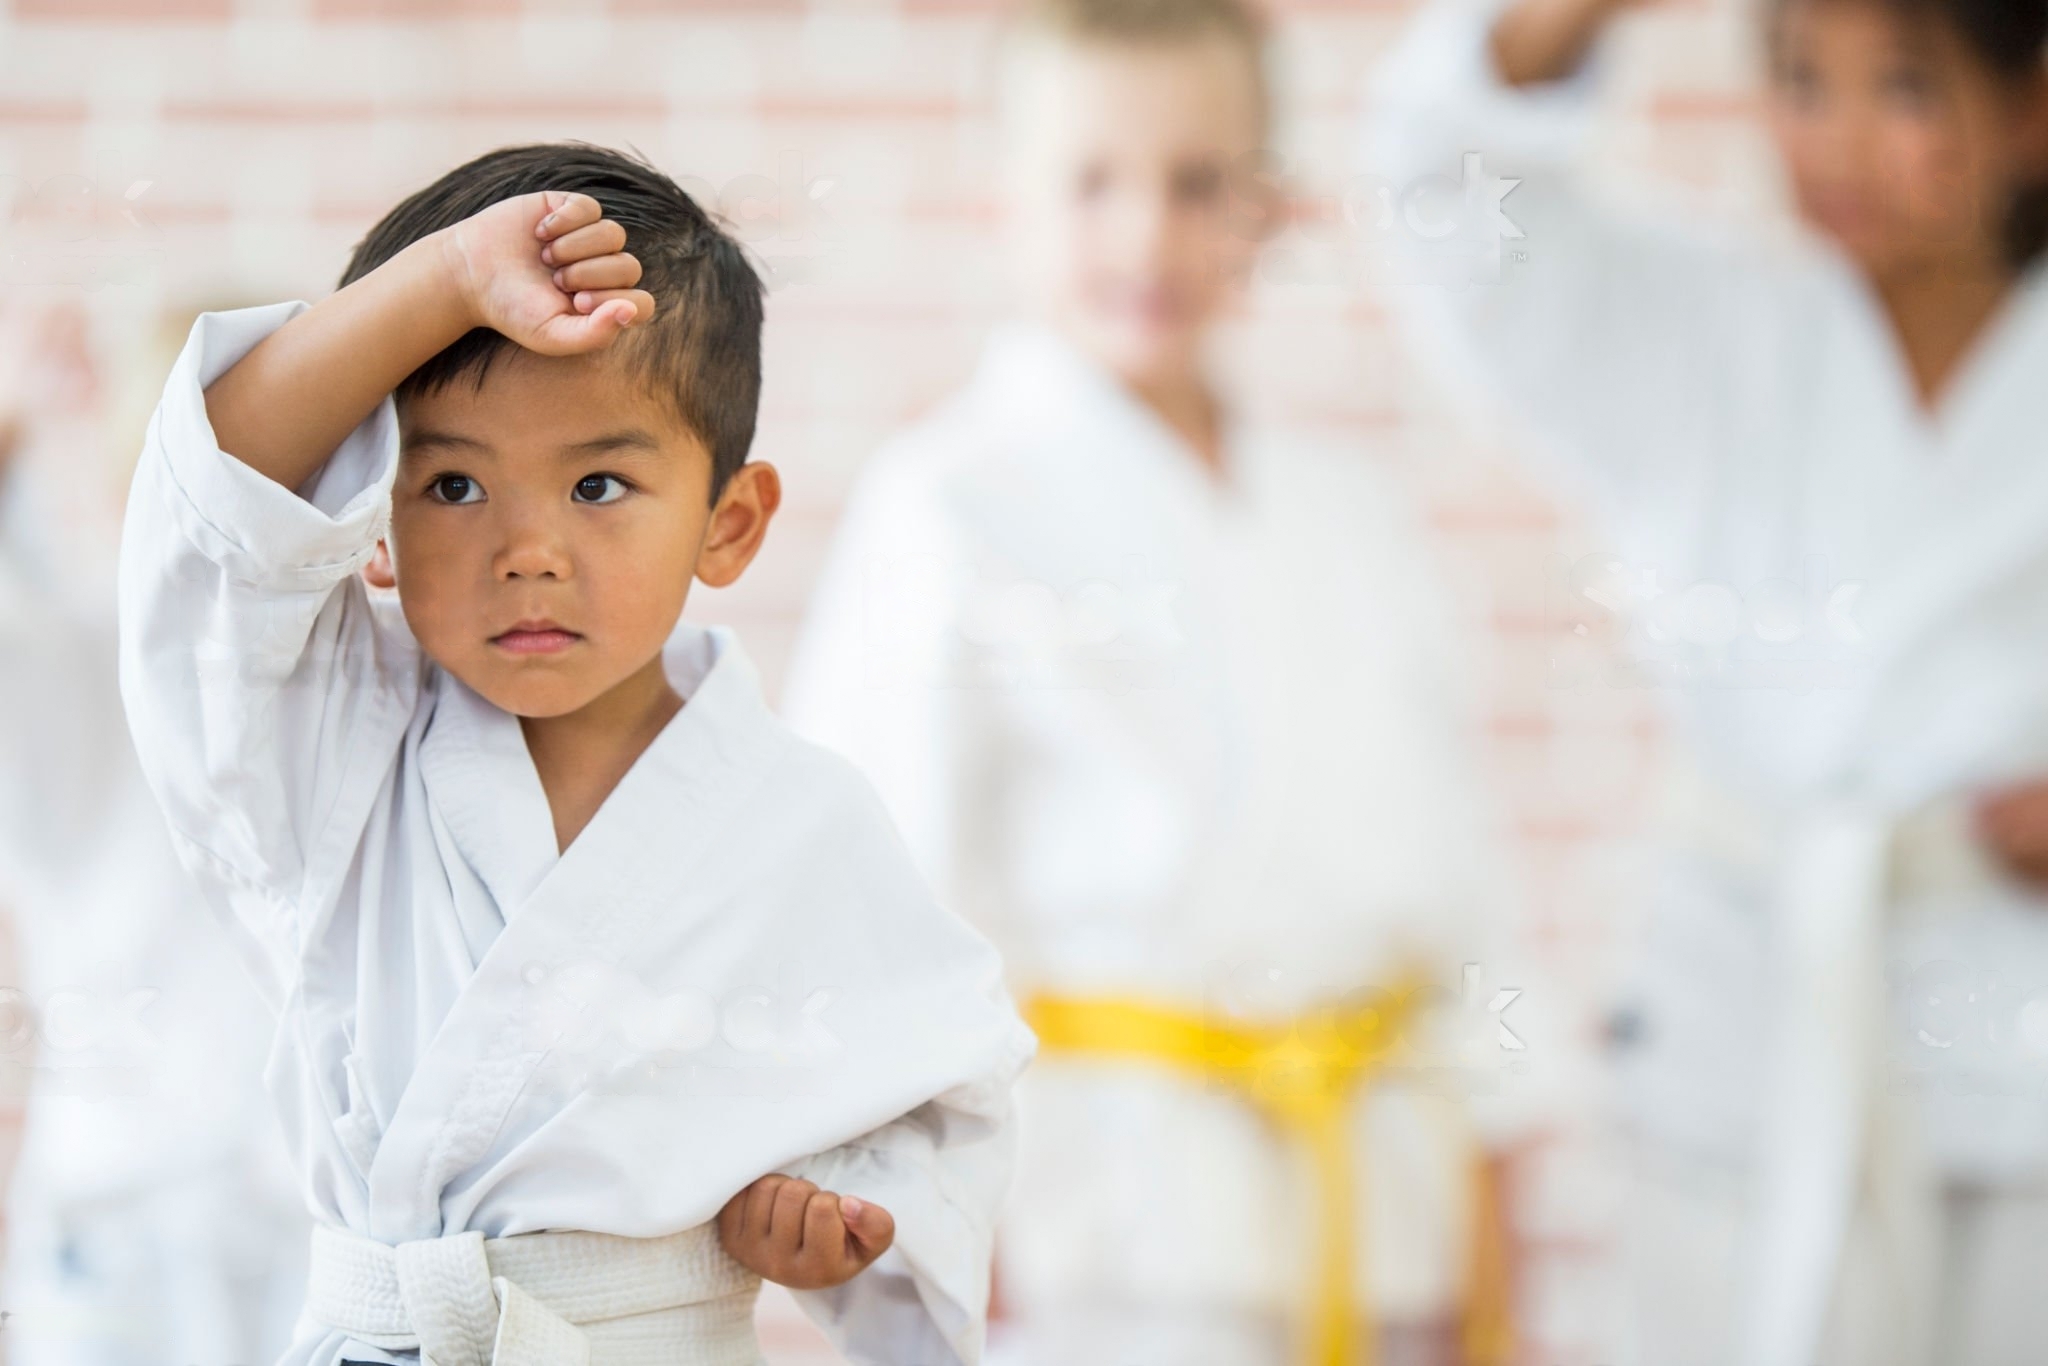 Disziplin im Kampfsport: Eine wichtige Lektion für Kinder